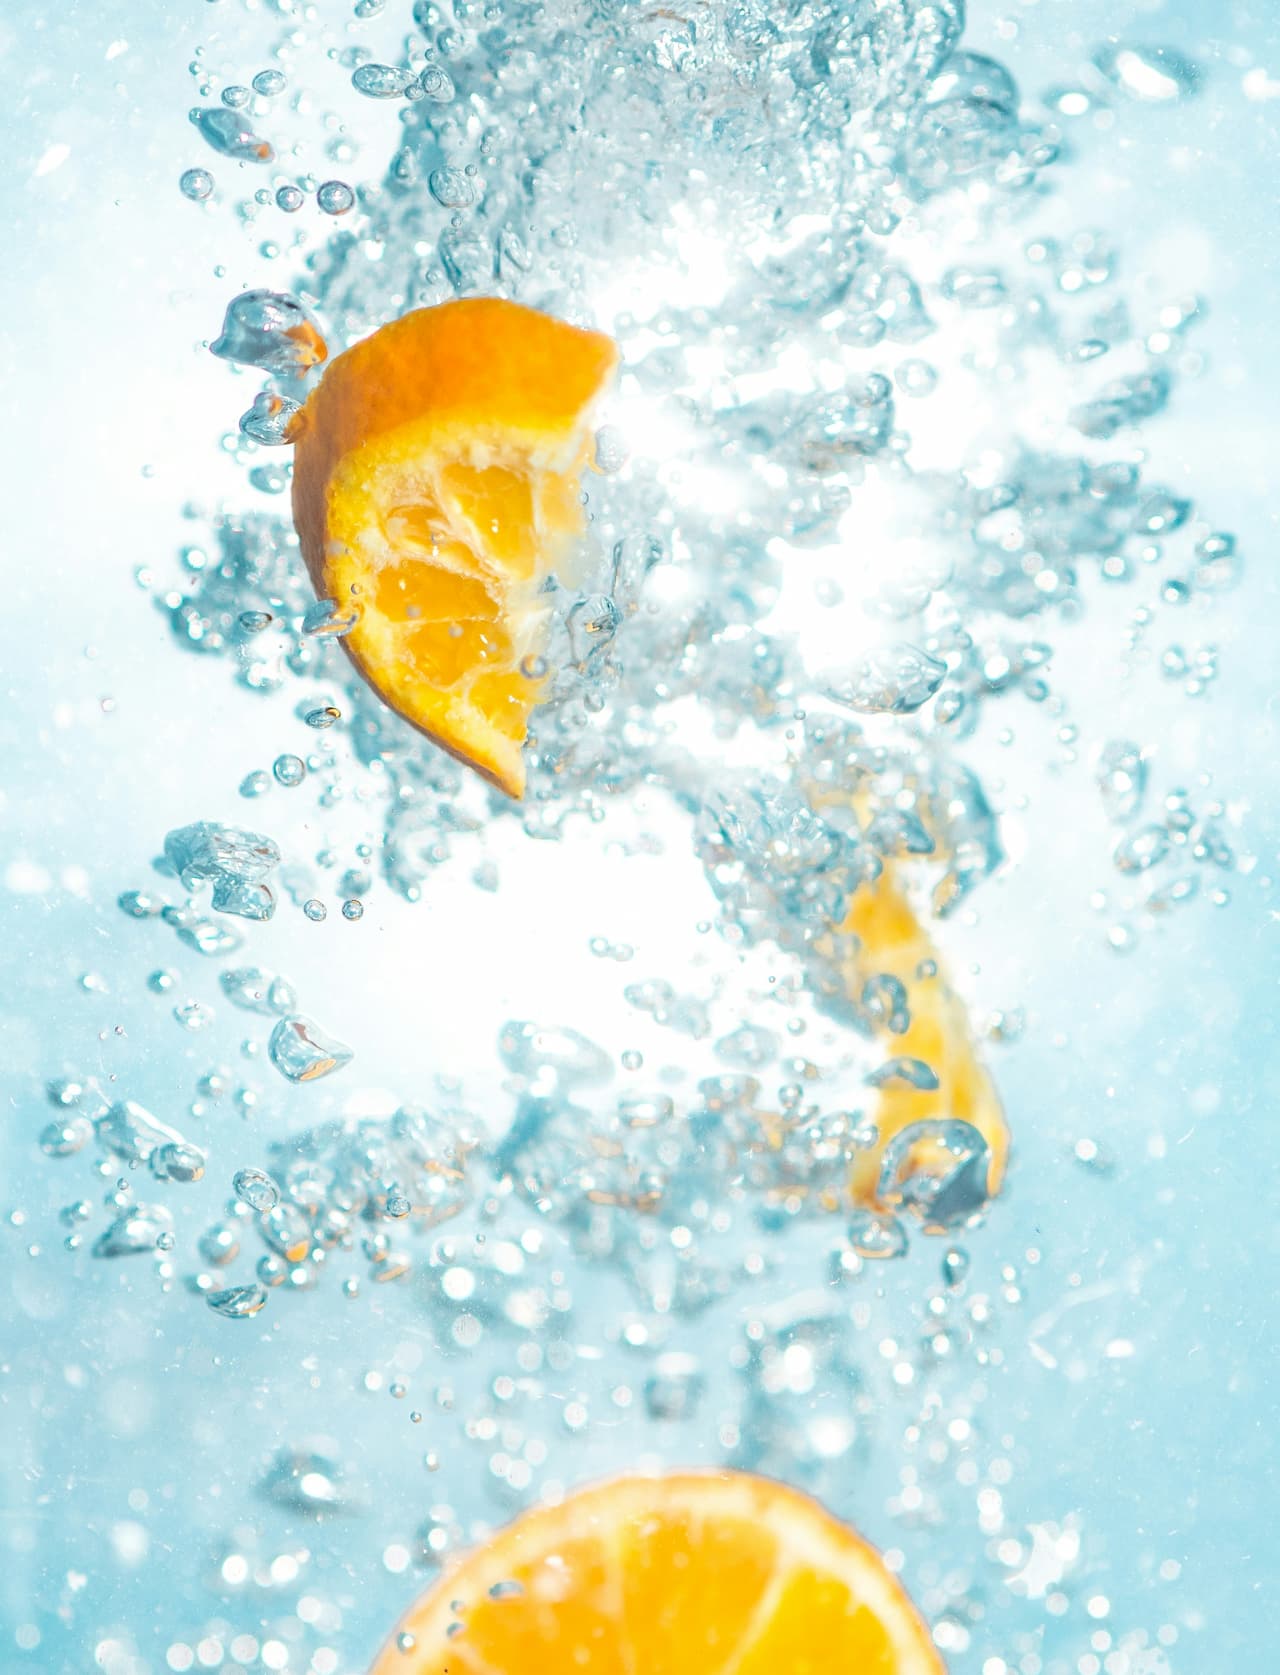 Una naranja cortada que se deja caer en agua fría y refrescante